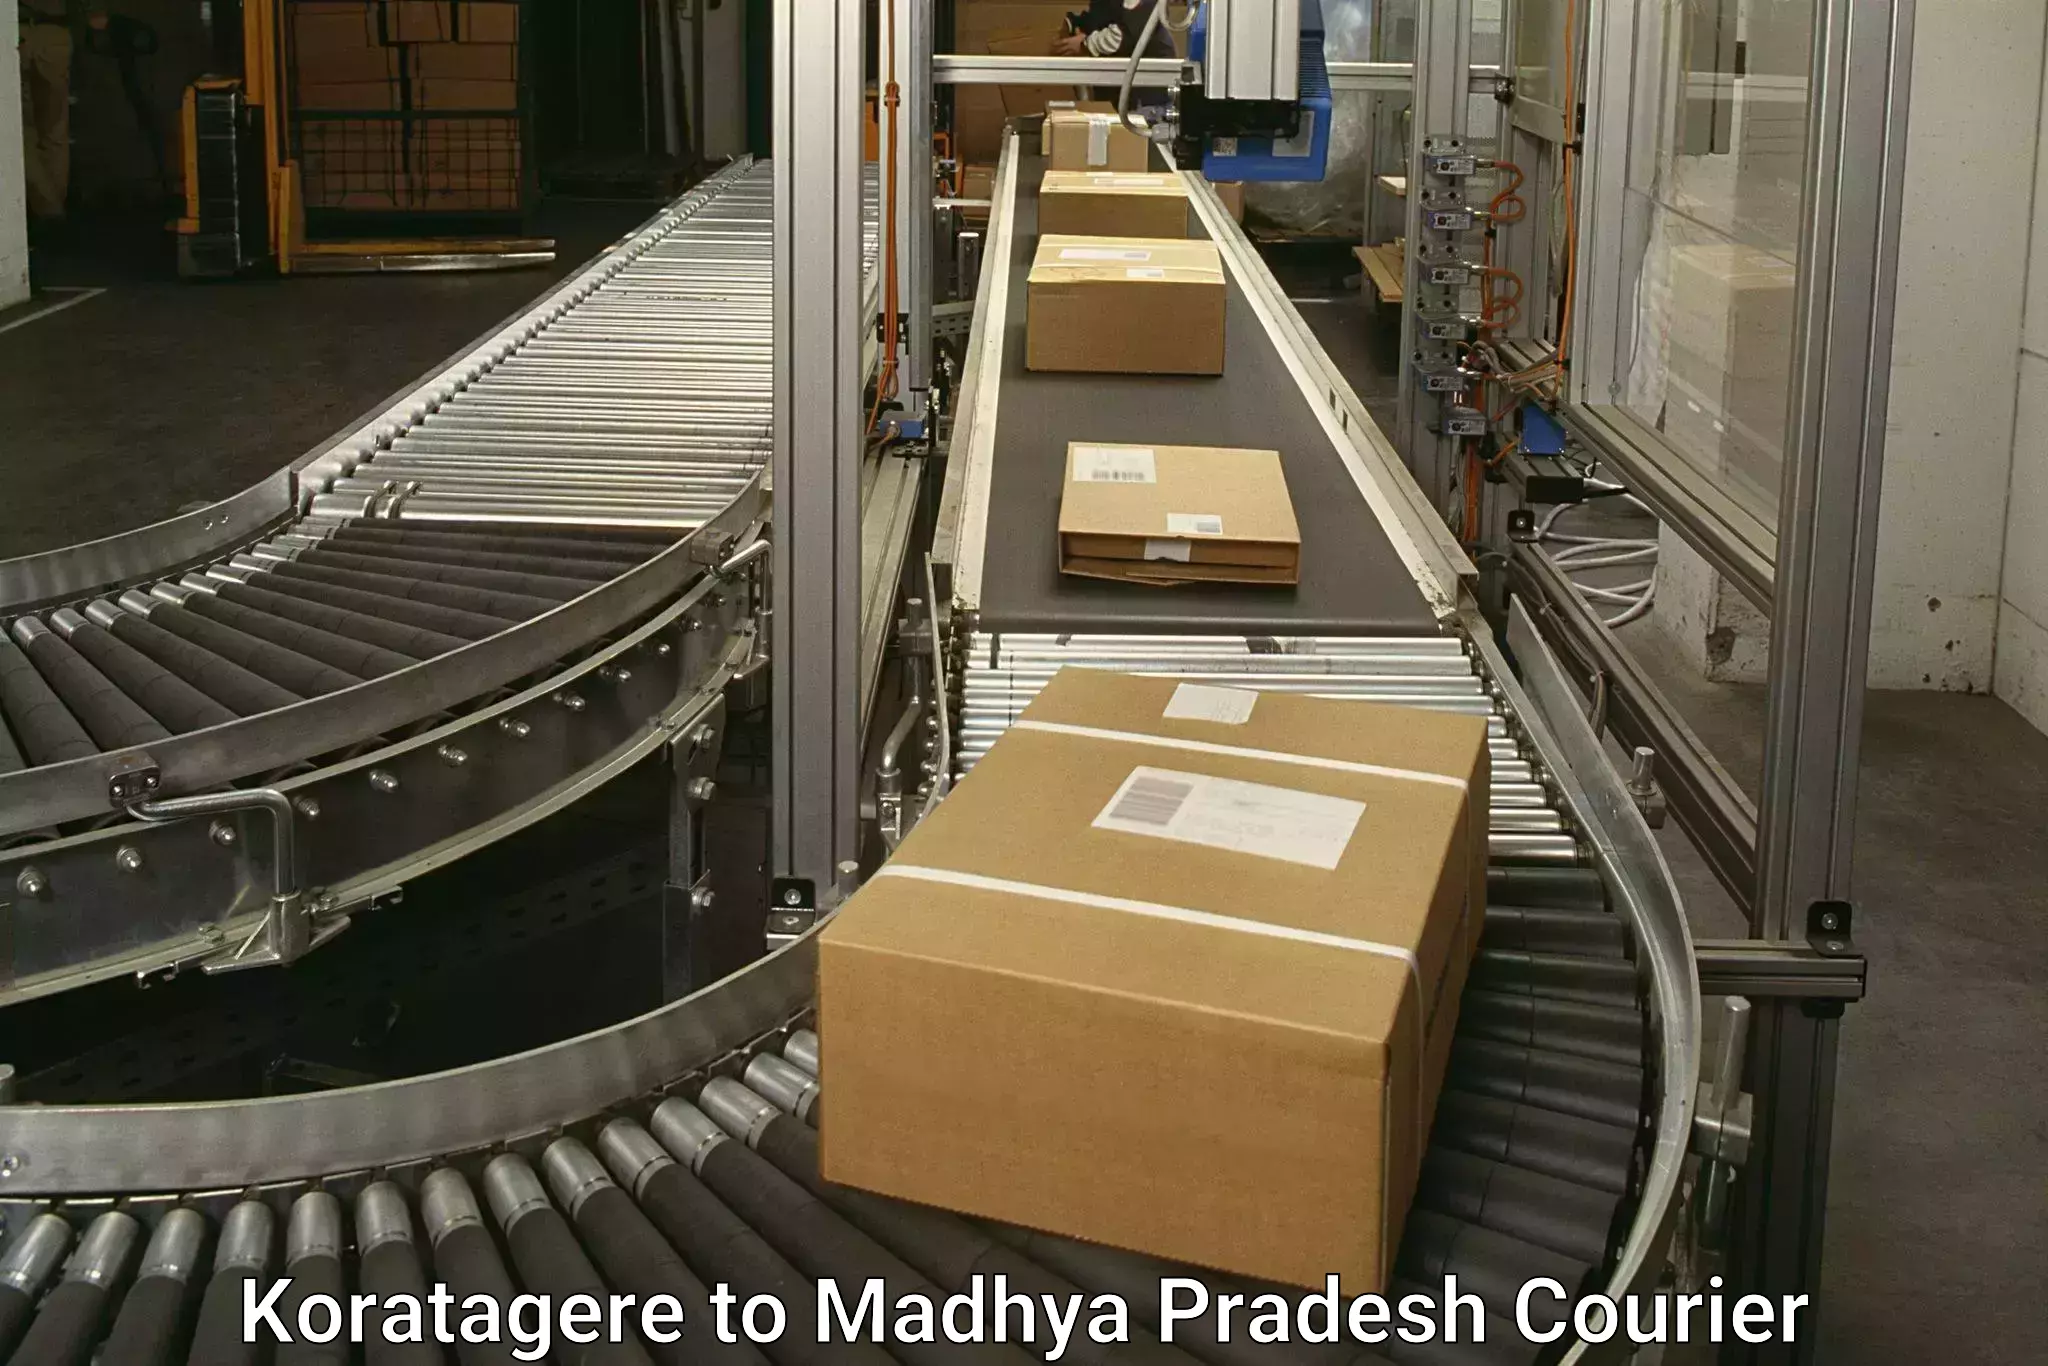 Express package handling Koratagere to Madhya Pradesh